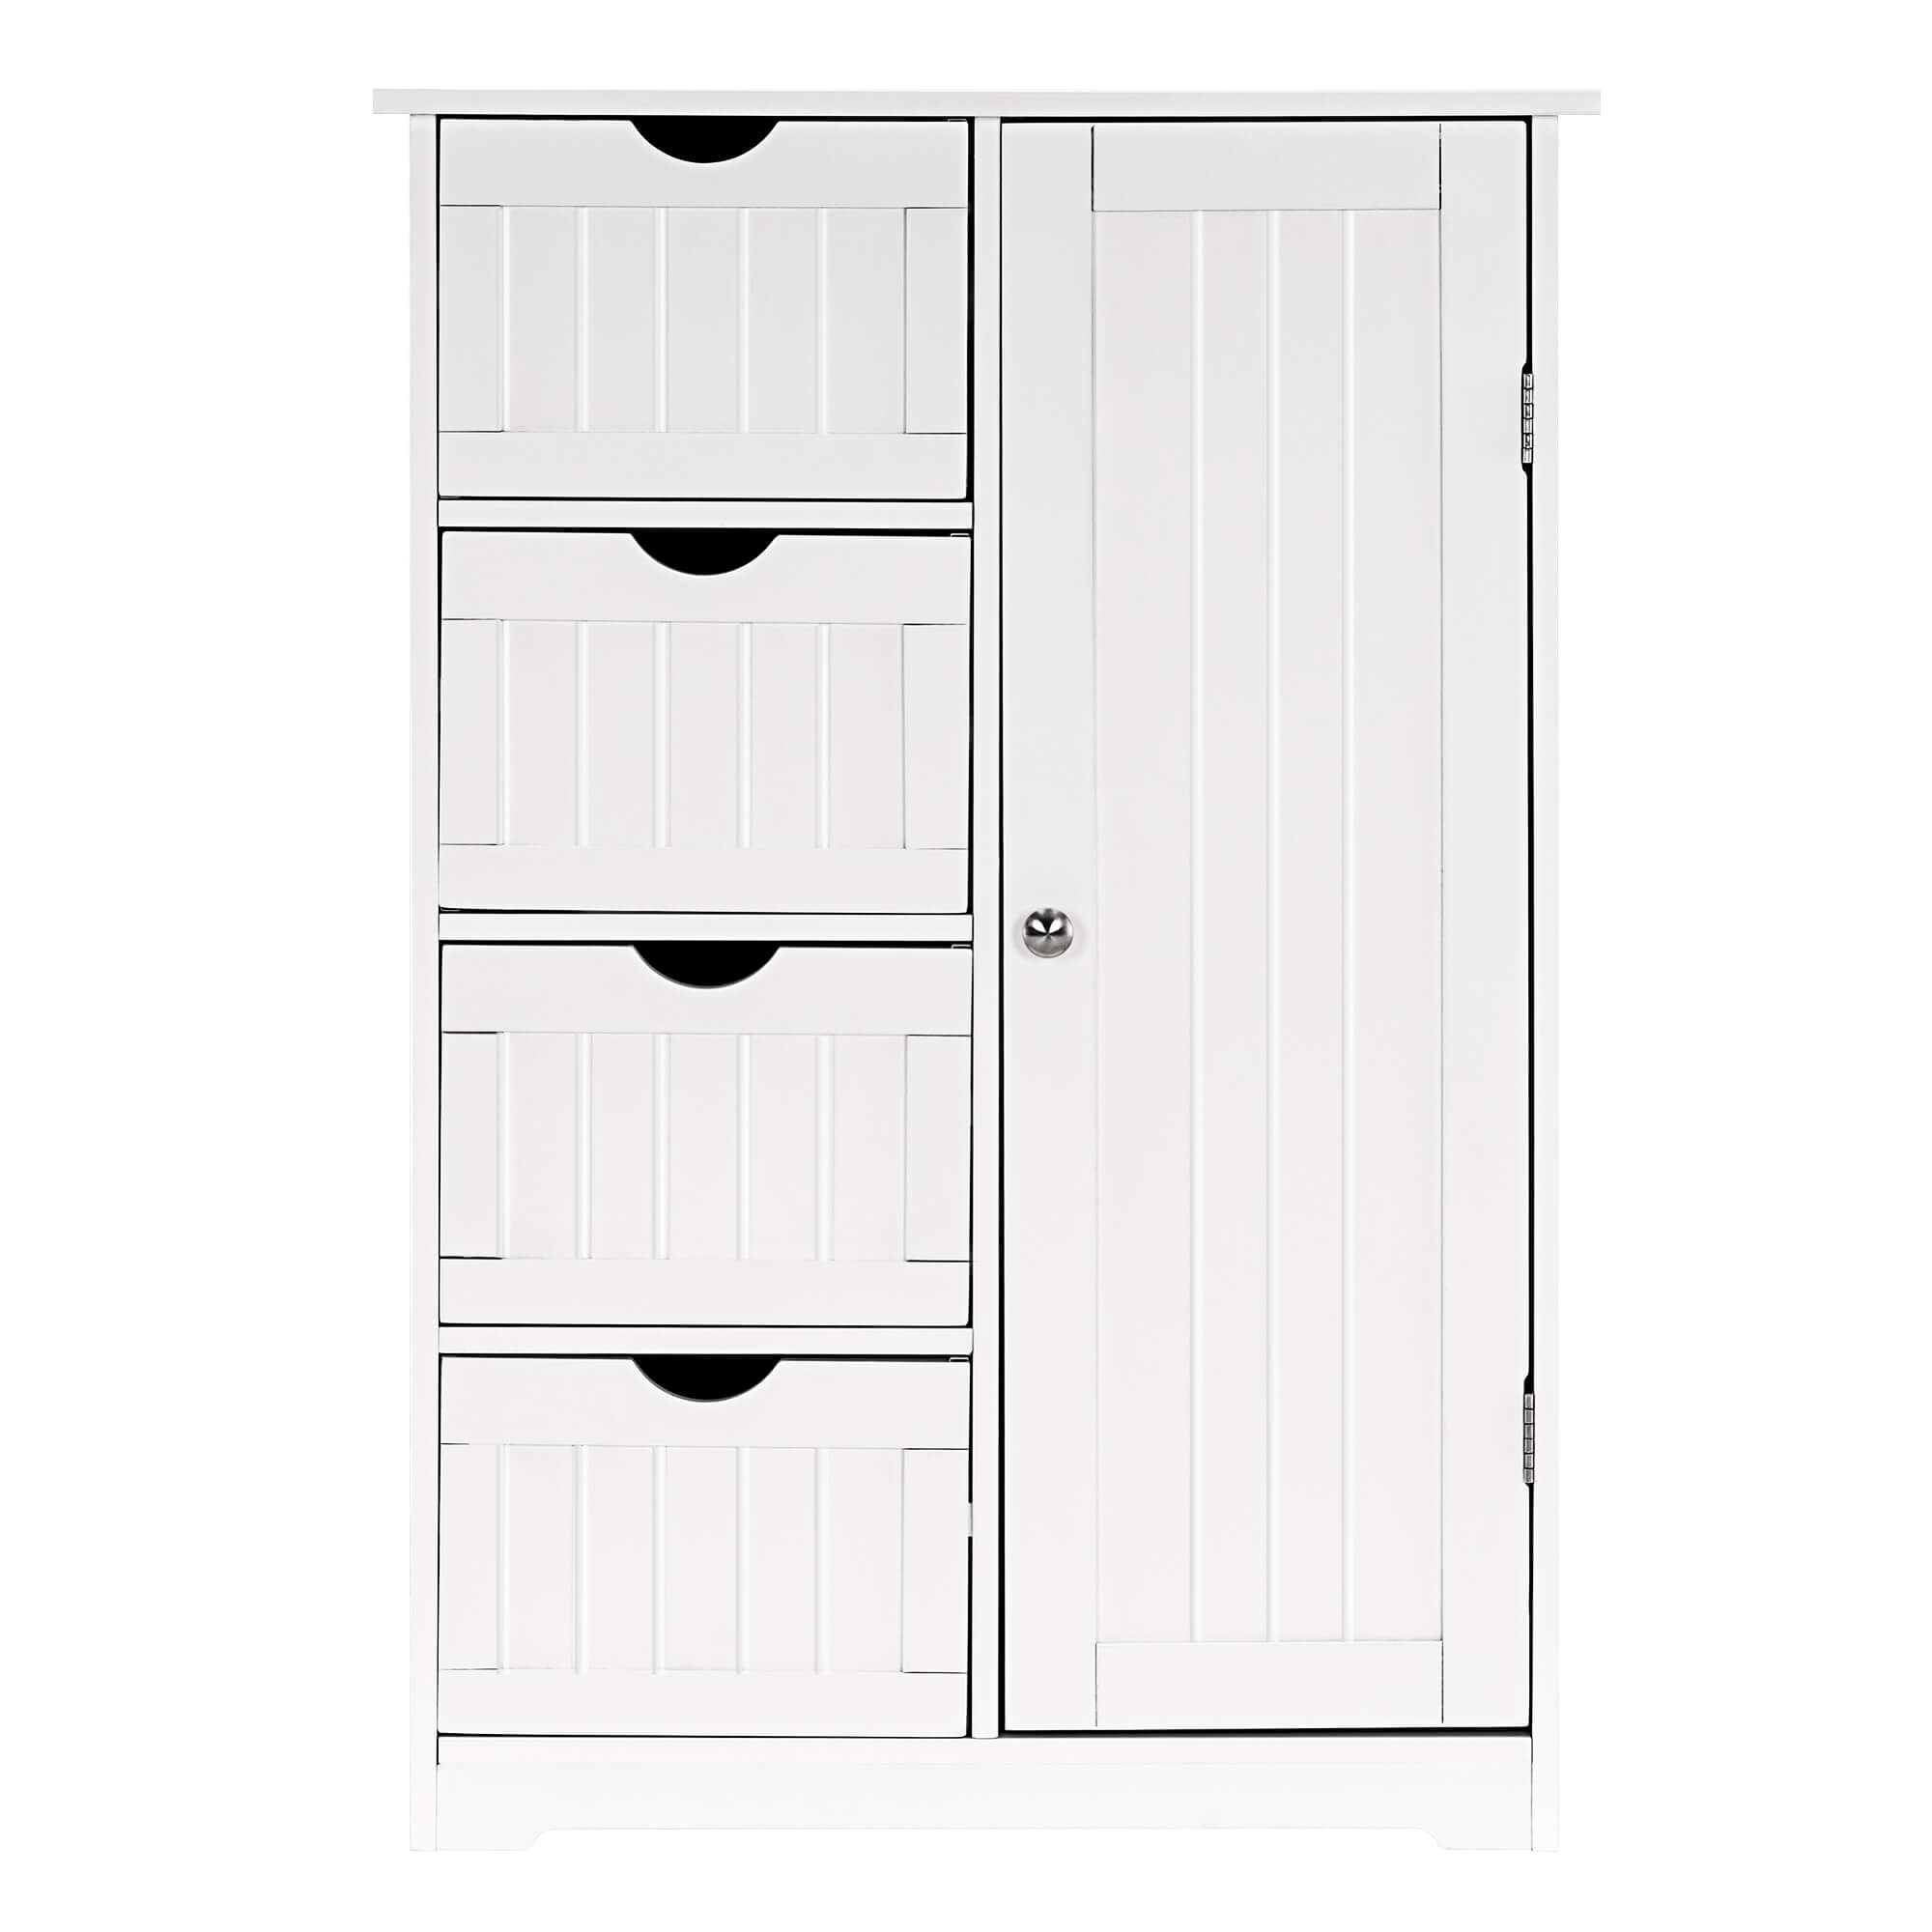 Ivinta Slim Floor Standing Bathroom Storage Cabinet, MDF - Grey